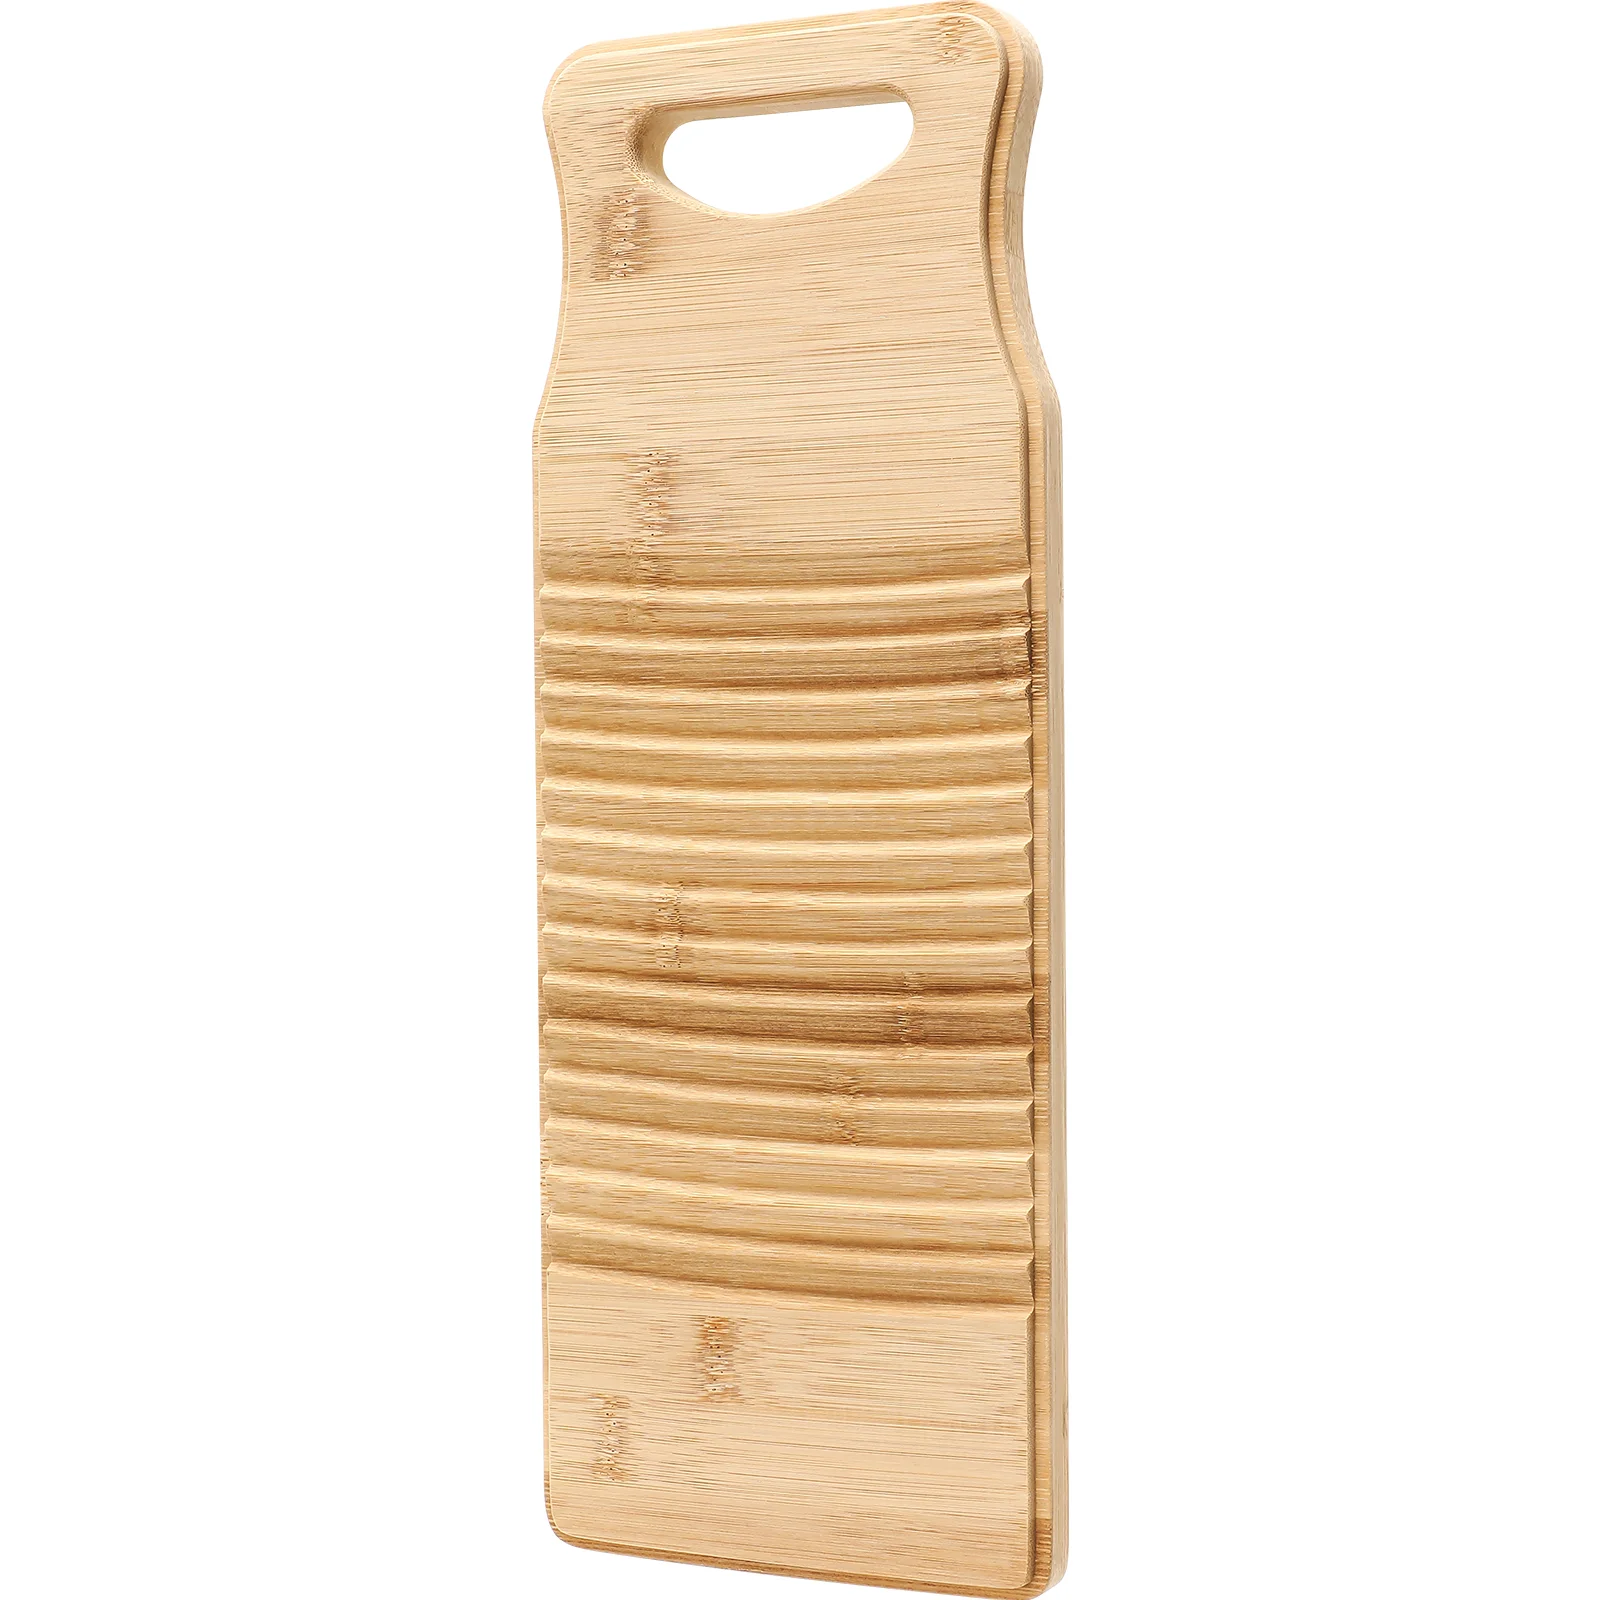 TOPBATHY Bamboo Wood Washing Washboard Non-slip Home Washing Scrubbing Board Creative Laundry Board Washboard Hand Wash Board